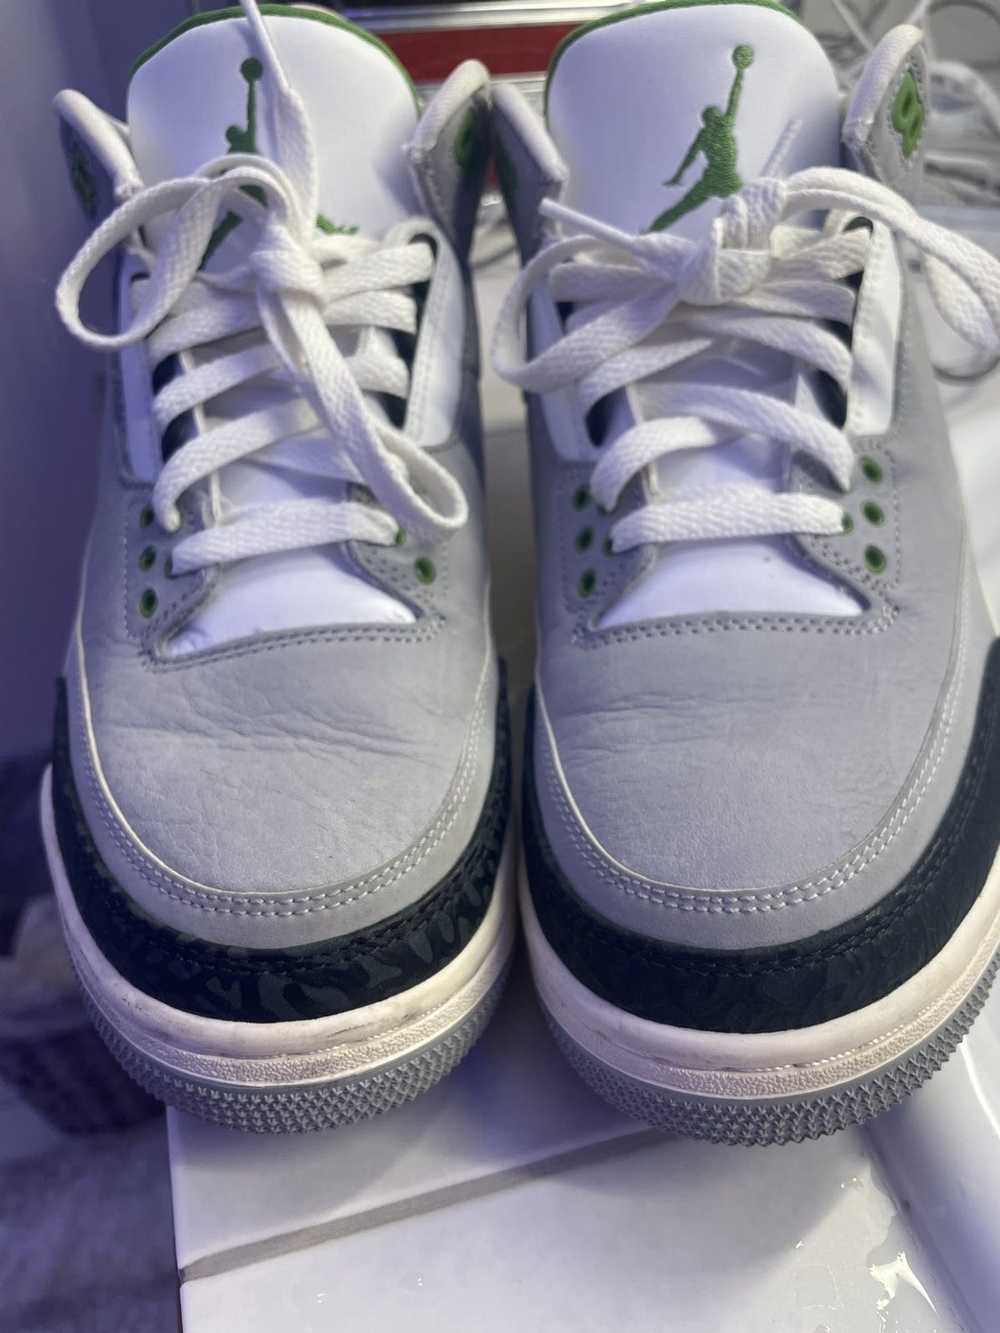 Jordan Brand × Nike Air Jordan 3 chlorophyll - image 2